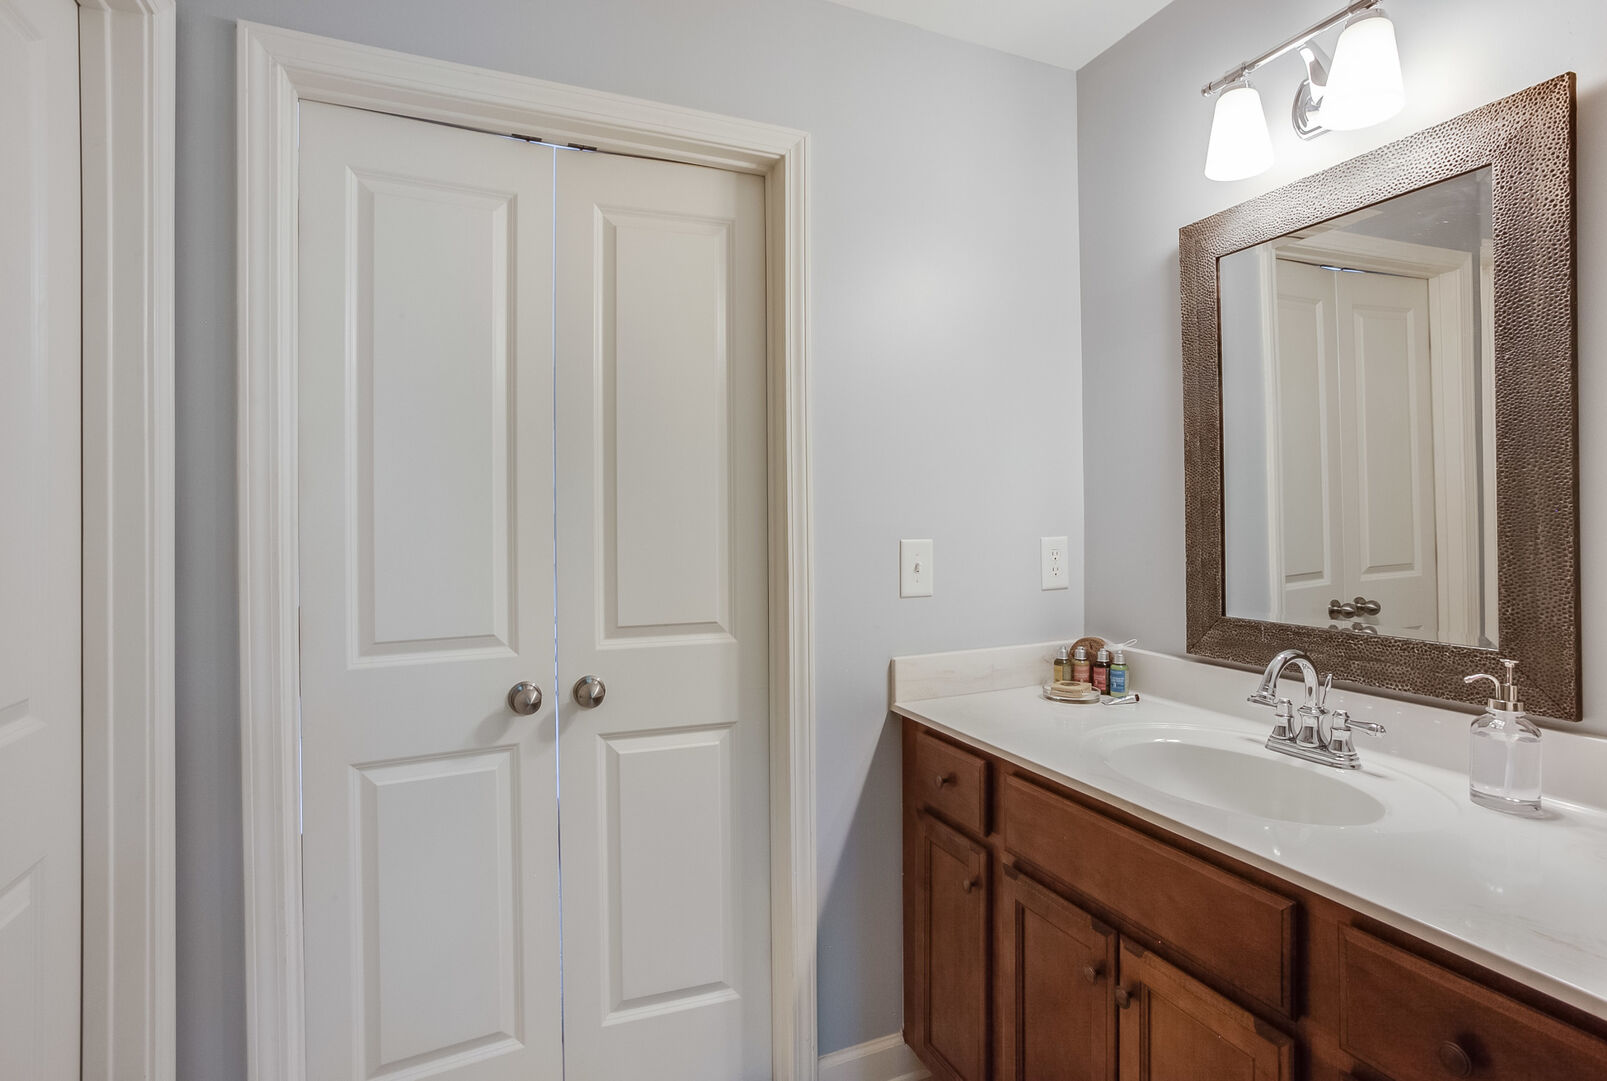 Single Vanity Sink, Mirror, Lamp, and Door.